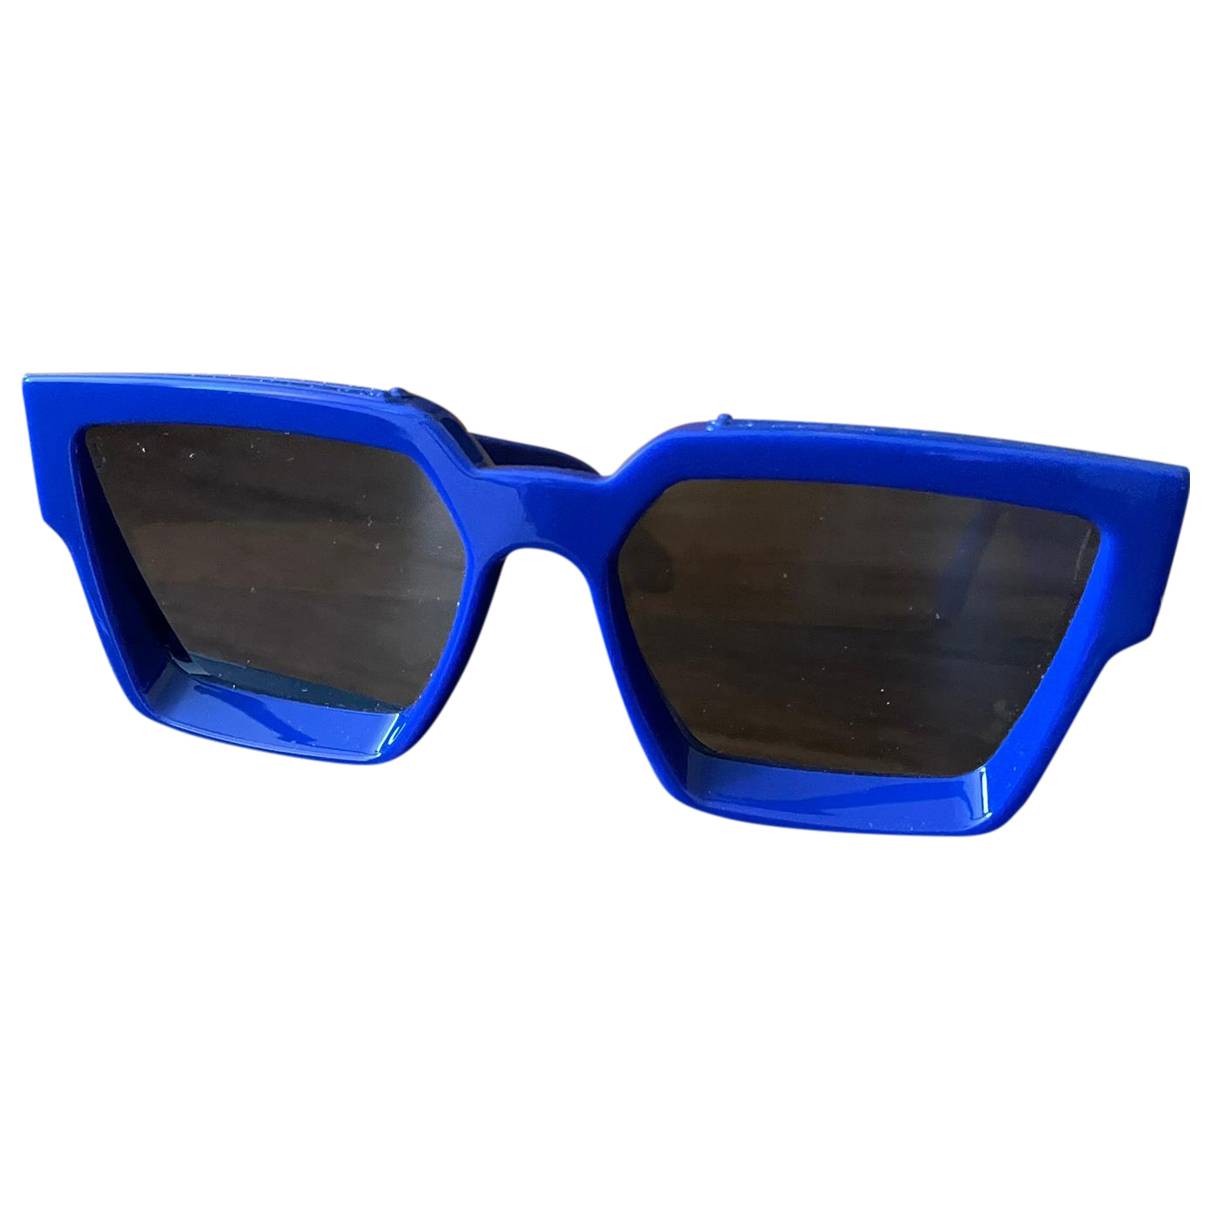 Louis Vuitton - Authenticated 1.1 Millionnaires Sunglasses - Plastic Blue Plain For Man, Never Worn